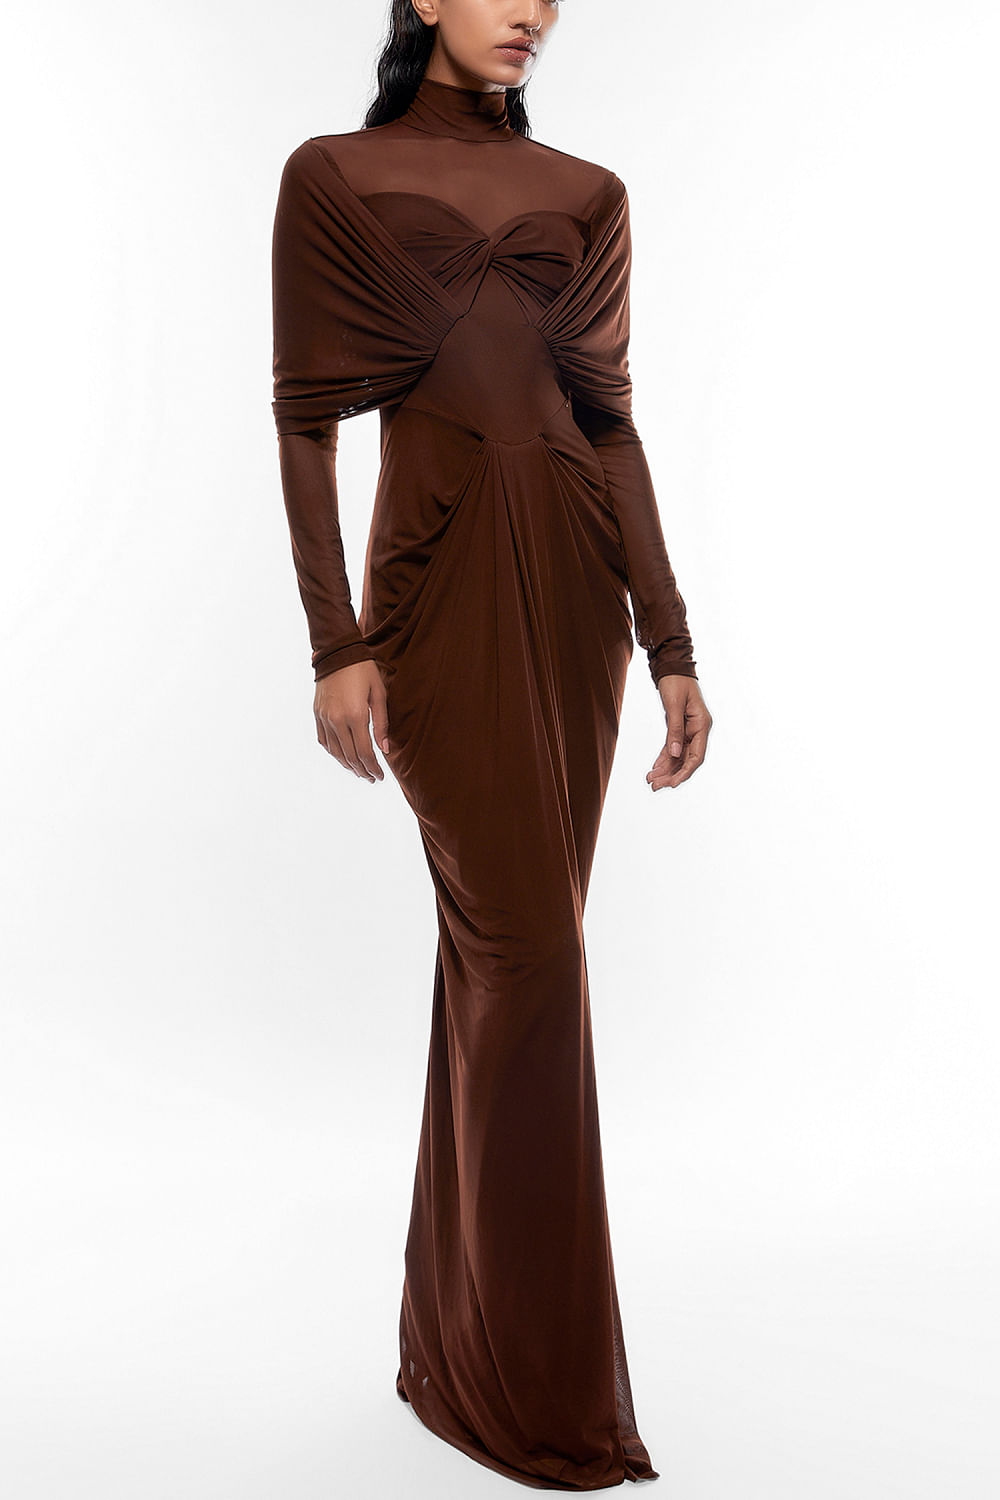 Shop Long Brown Maxi Dresses for Women - Lulus